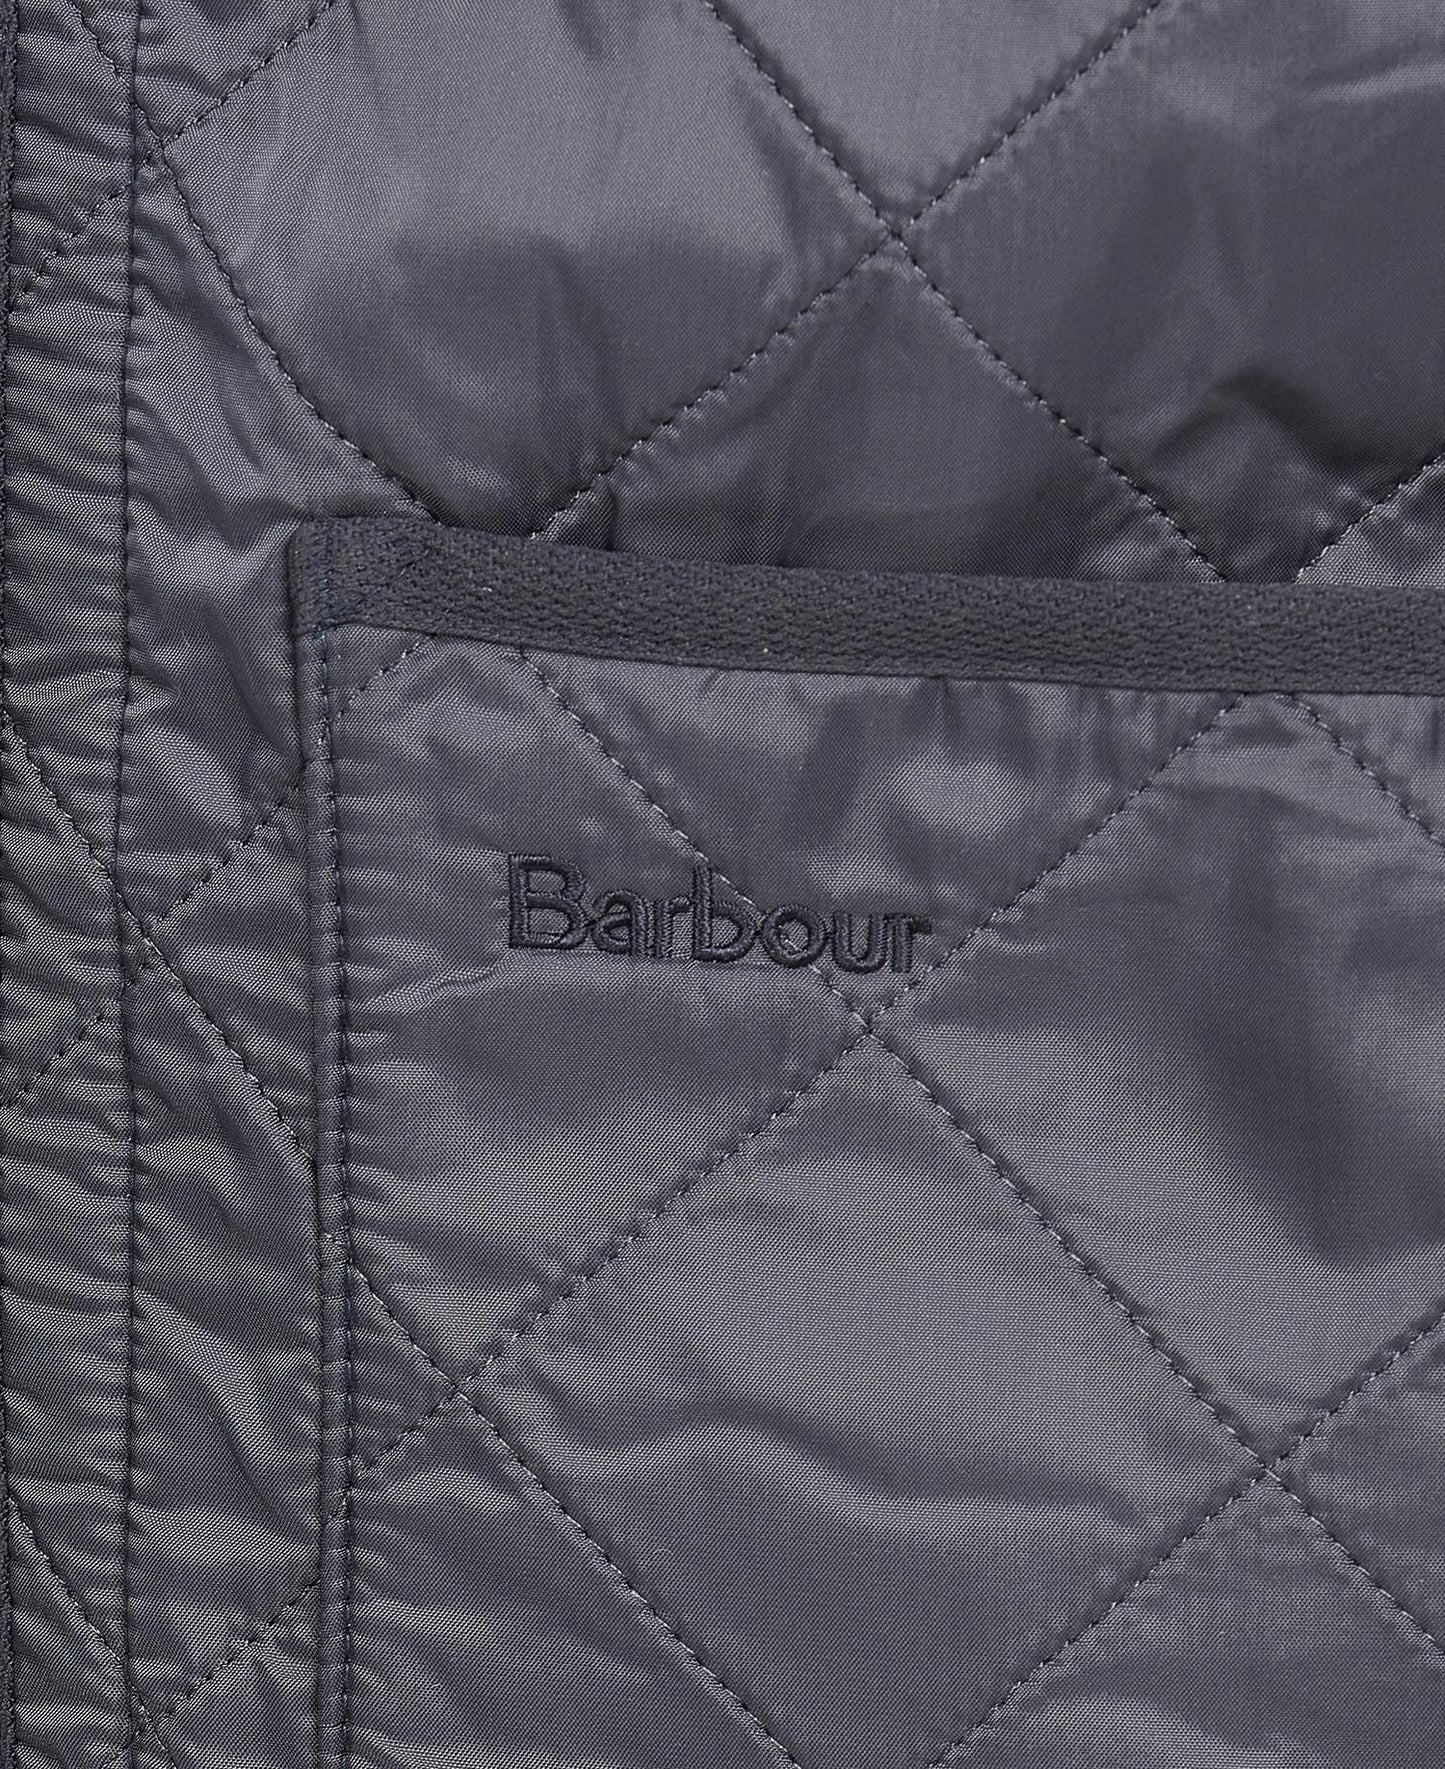 Barbour Men's Polarquilt Waistcoat